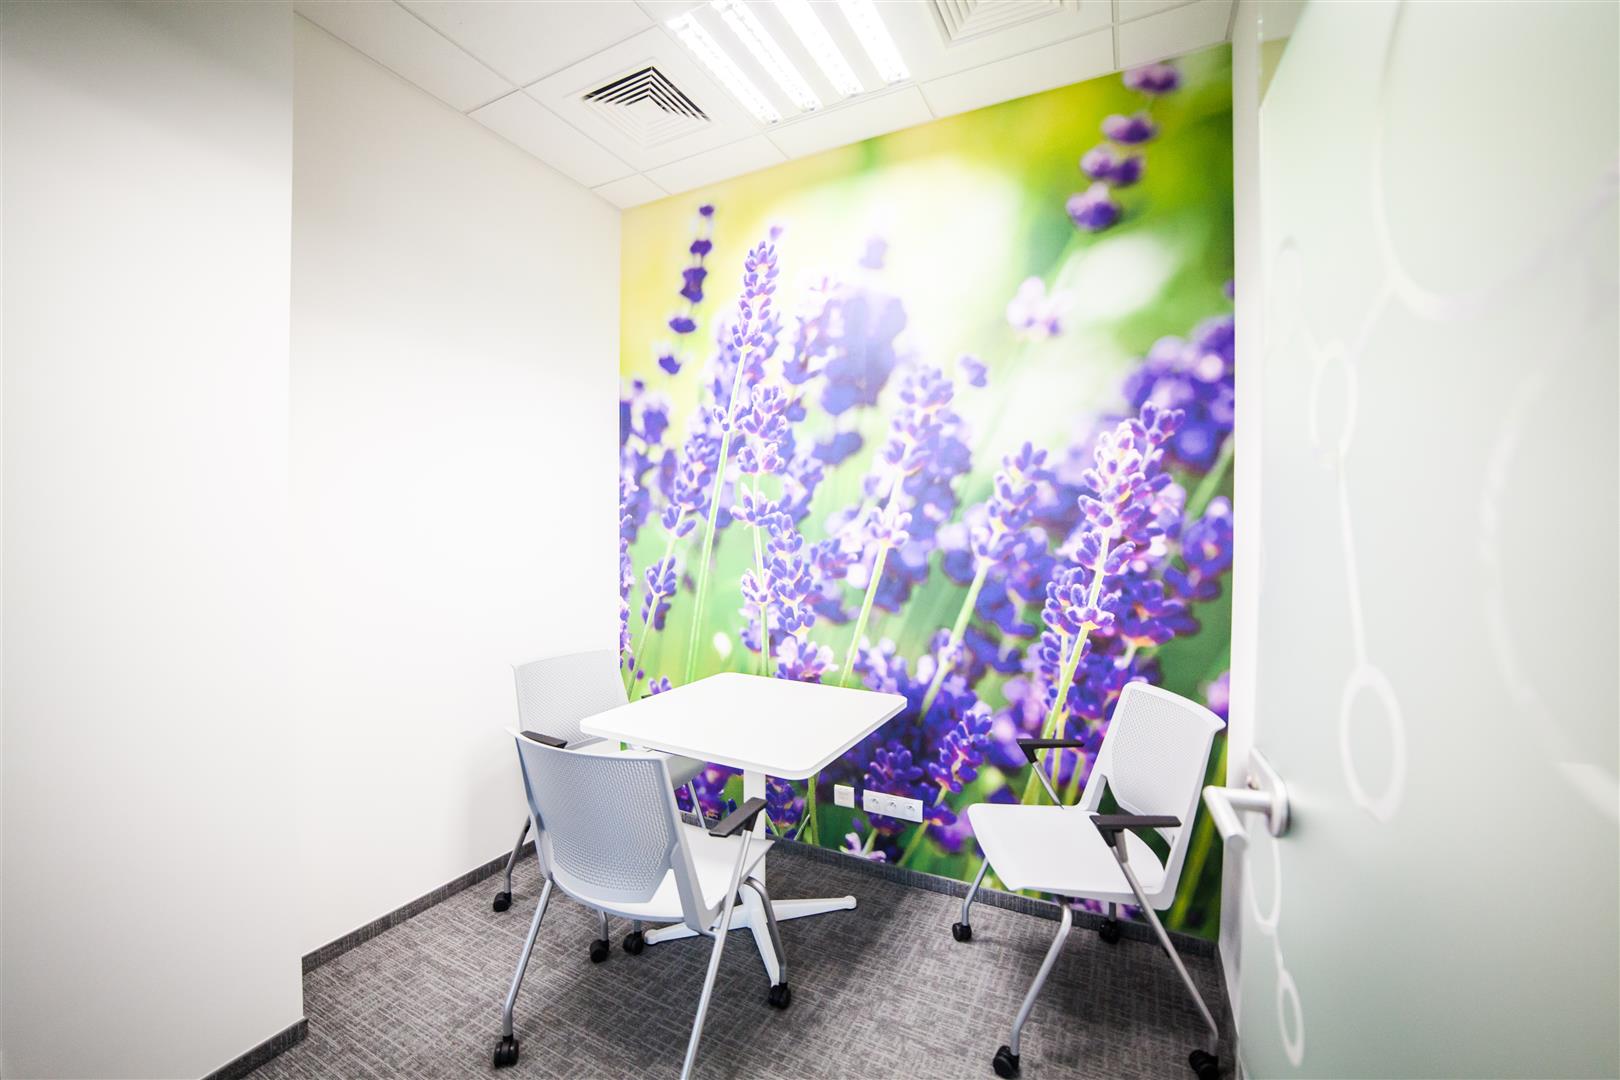 Ściany sal konferencyjnych w firmie AstraZeneca są ozdobione tapetami. (Fot. Mikomax)